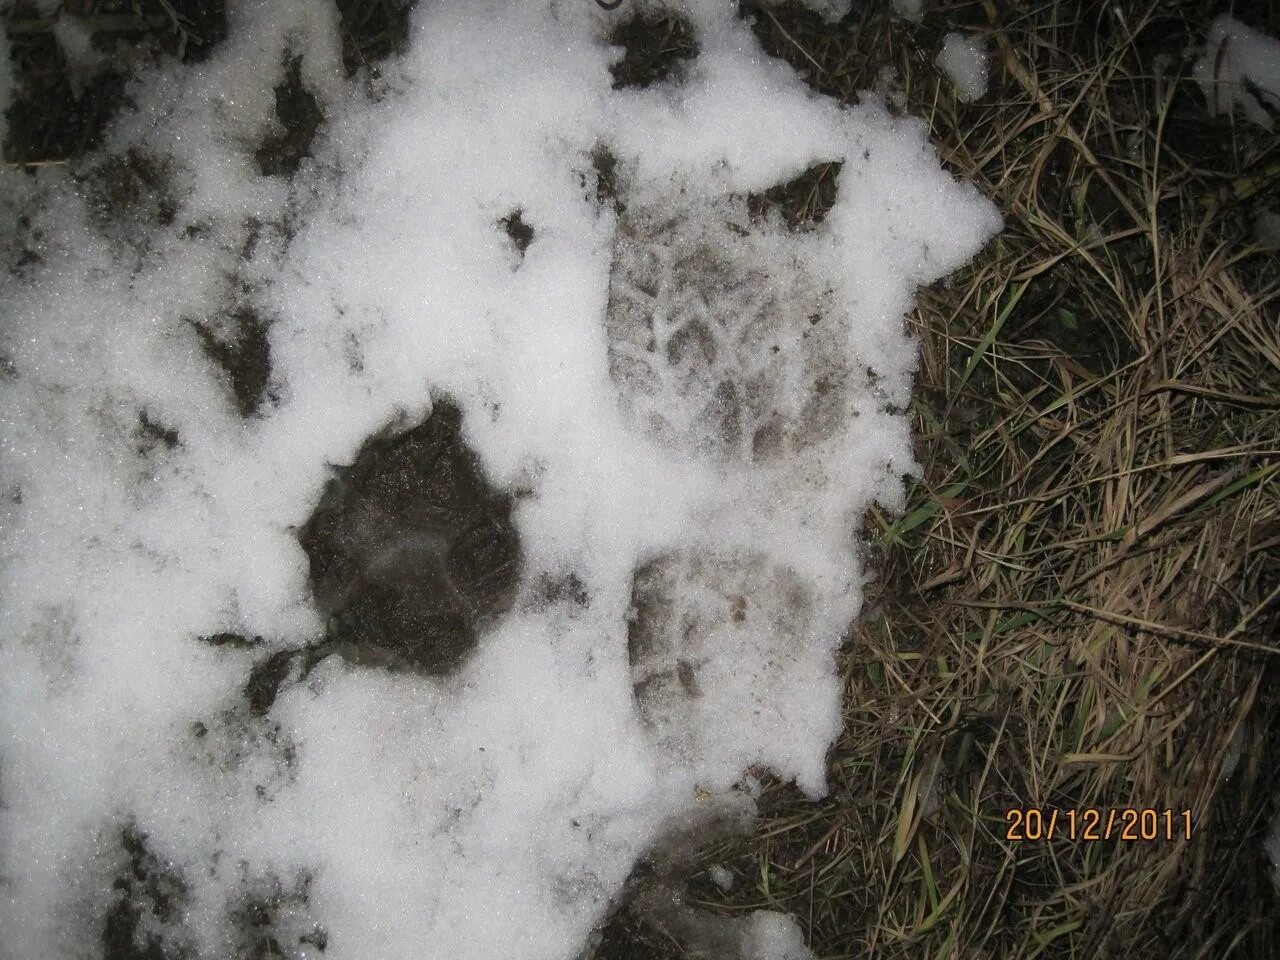 След волка. Следы волка на снегу. След Сибирского волка. Волчий след и собачий. Фото следа волка на снегу и собаки